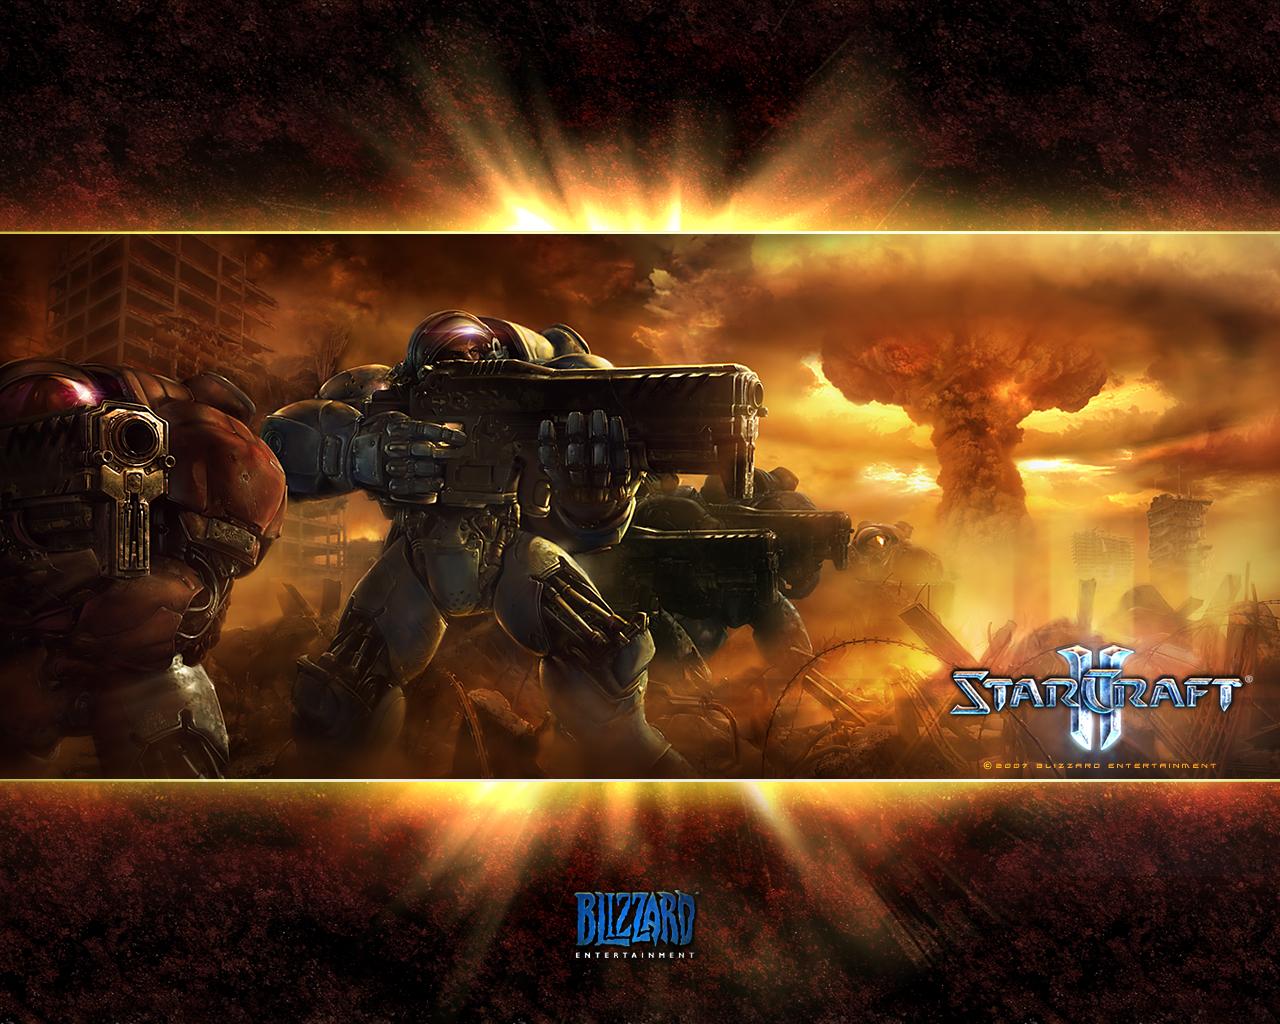 Game Wallpapers - Starcraft 2 Twitter Header - HD Wallpaper 